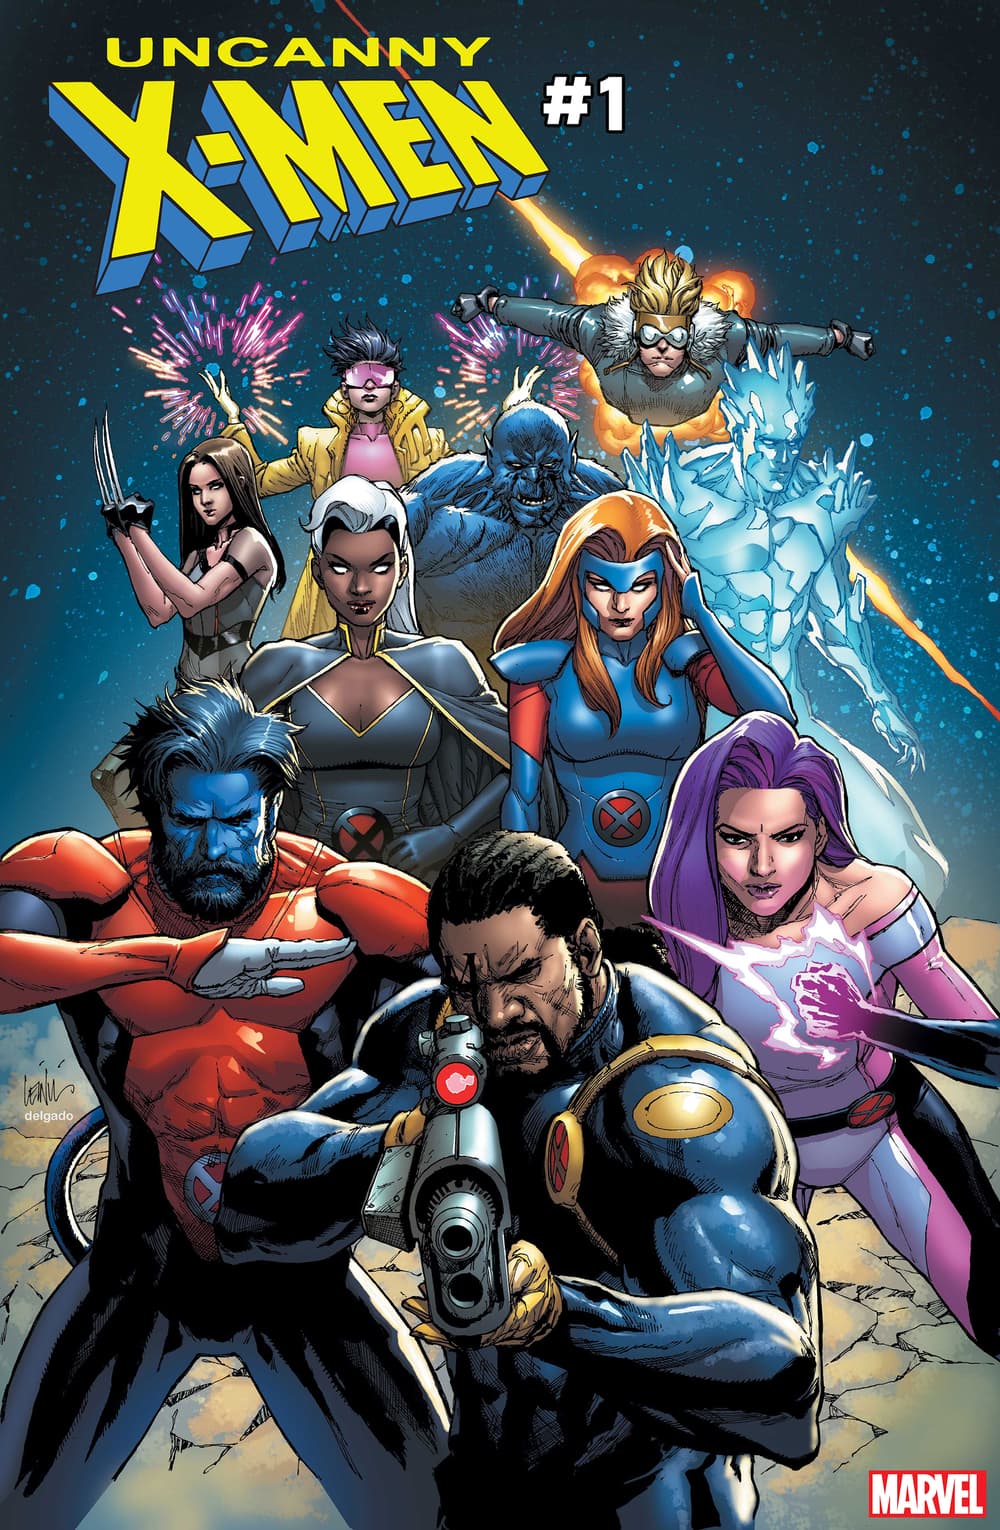 NM # 7 Fast Mint Marvel Comics Modern Alter Vol 3 Uncanny X-Men